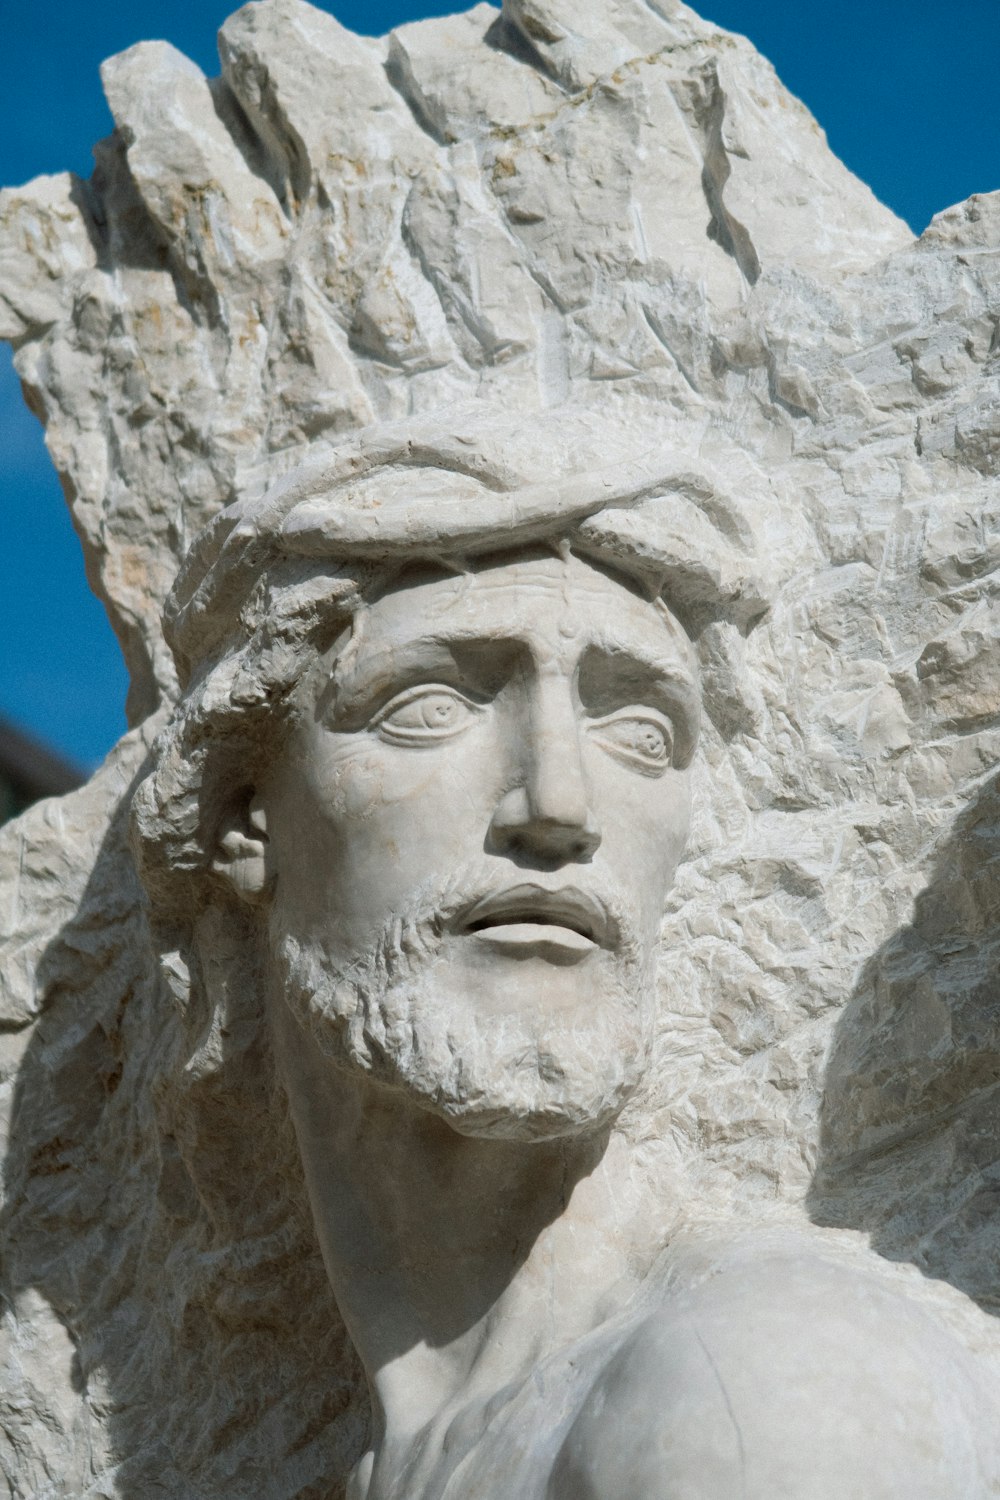 um close up de uma estátua de um homem com um chapéu